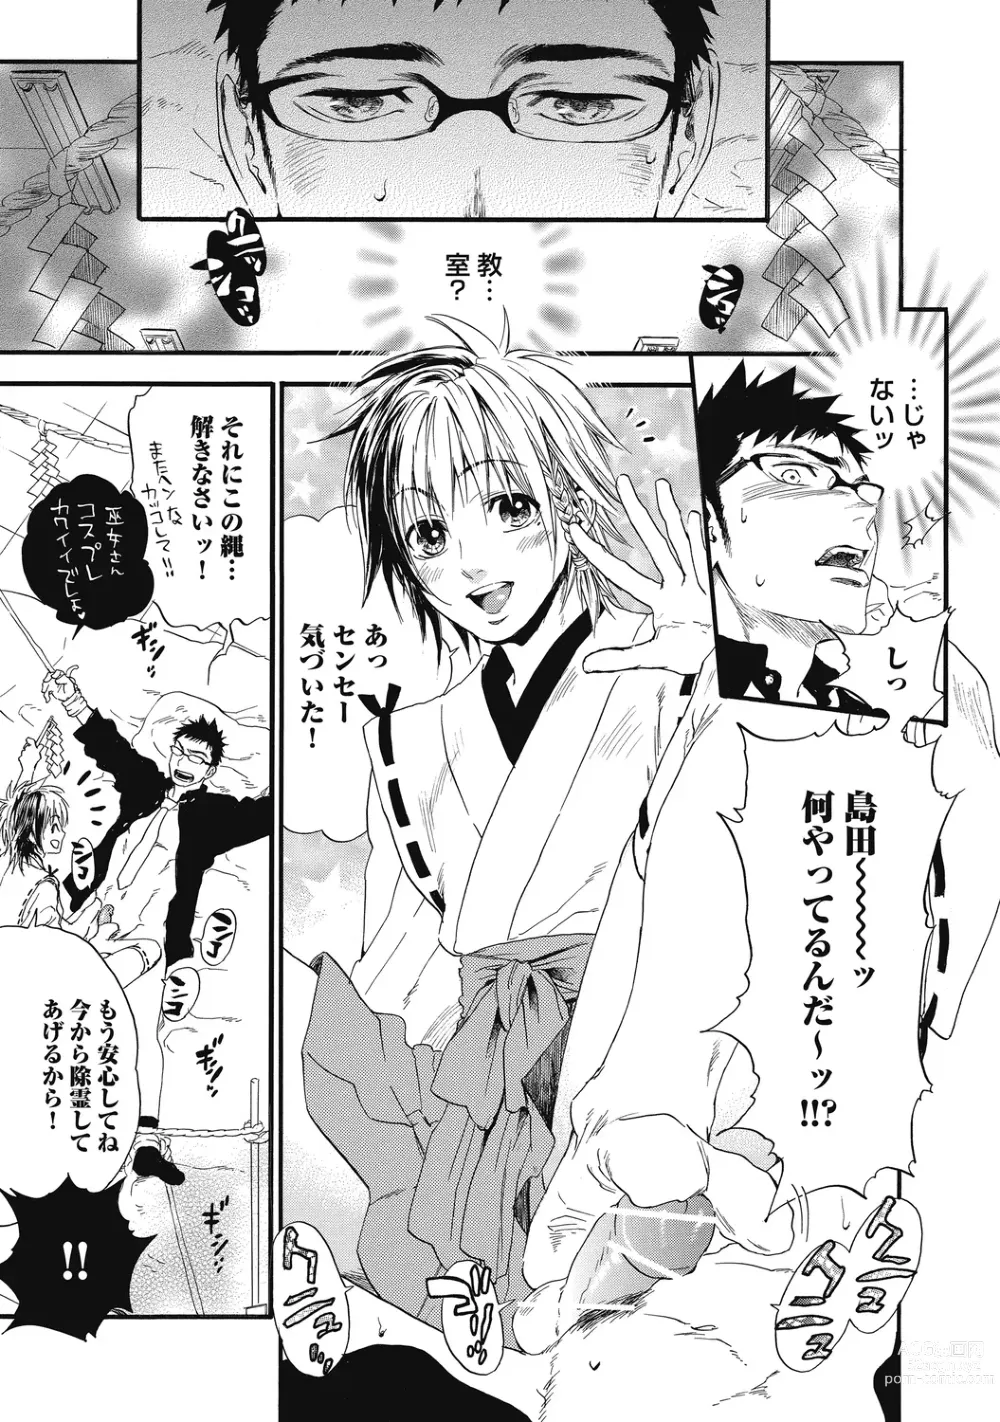 Page 17 of manga Mashounen